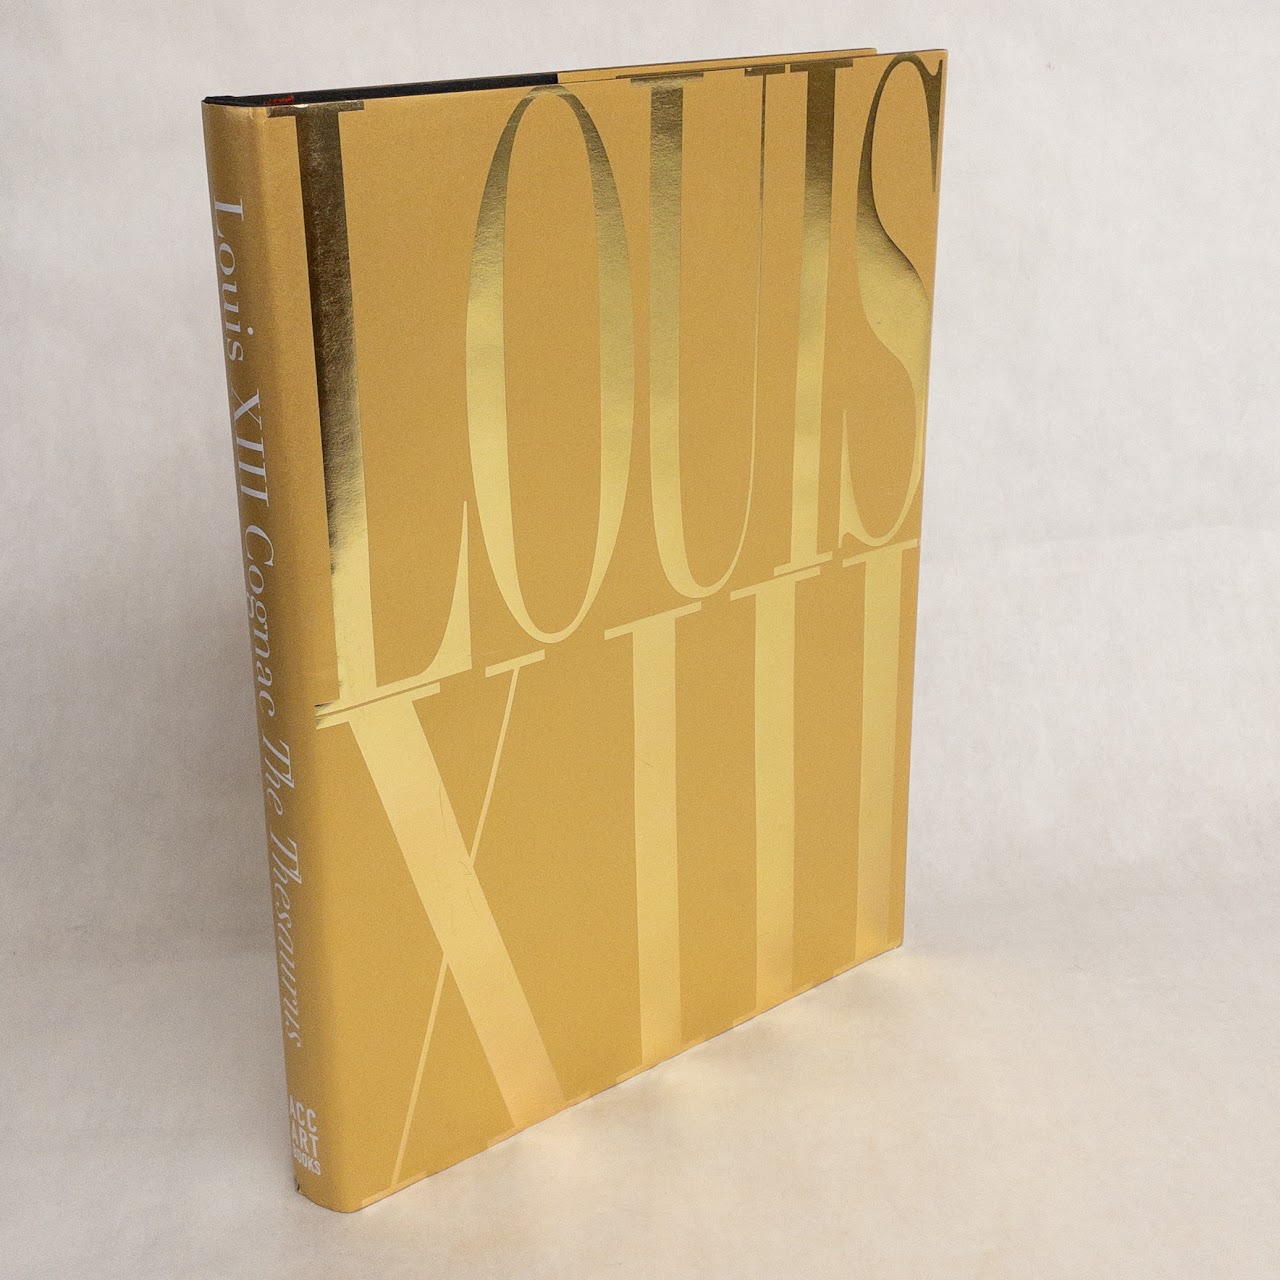 LOUIS XIII COGNAC on X: LOUIS XIII Cognac : The Thesaurus is